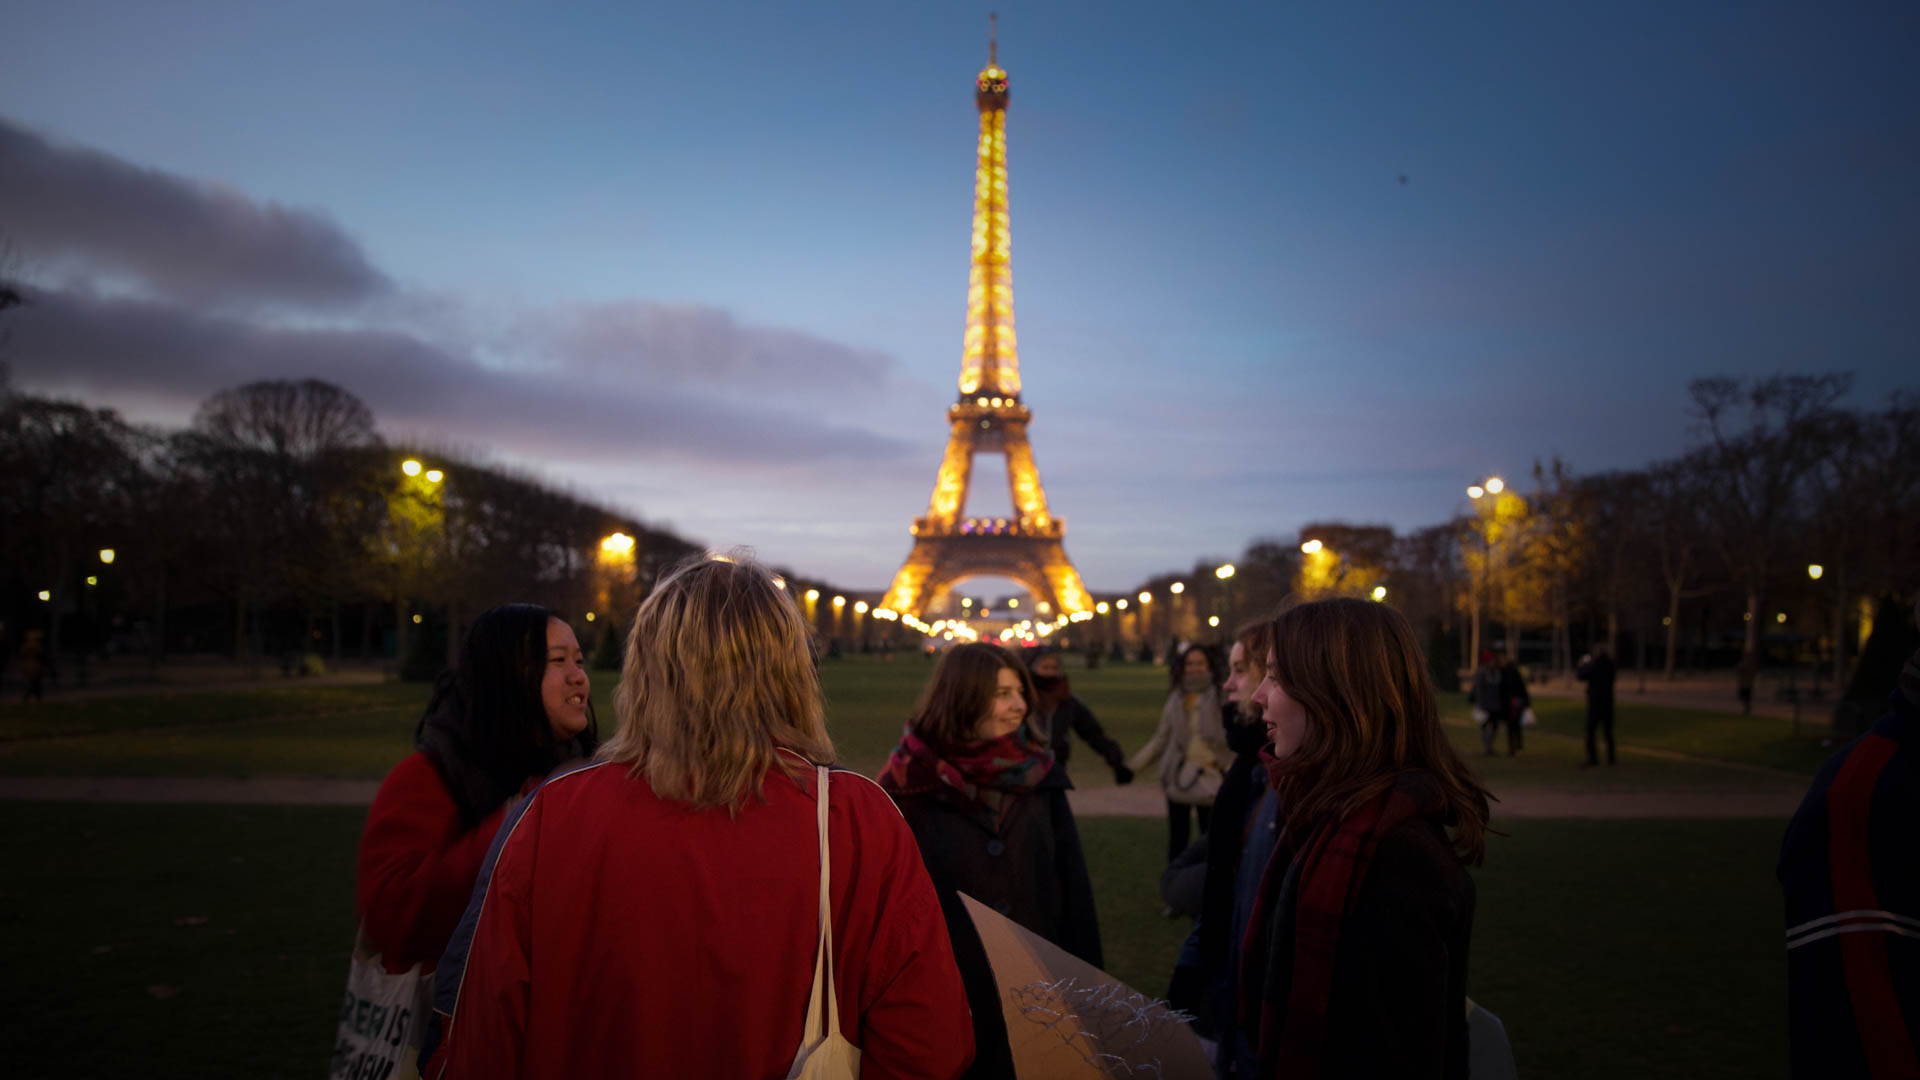 80 representanter fra Natur og Ungdom reiste til klimatoppmøtet i Paris. Amanda var ikke en av dem. (Foto: Anne Dorte Lunås, NRK)